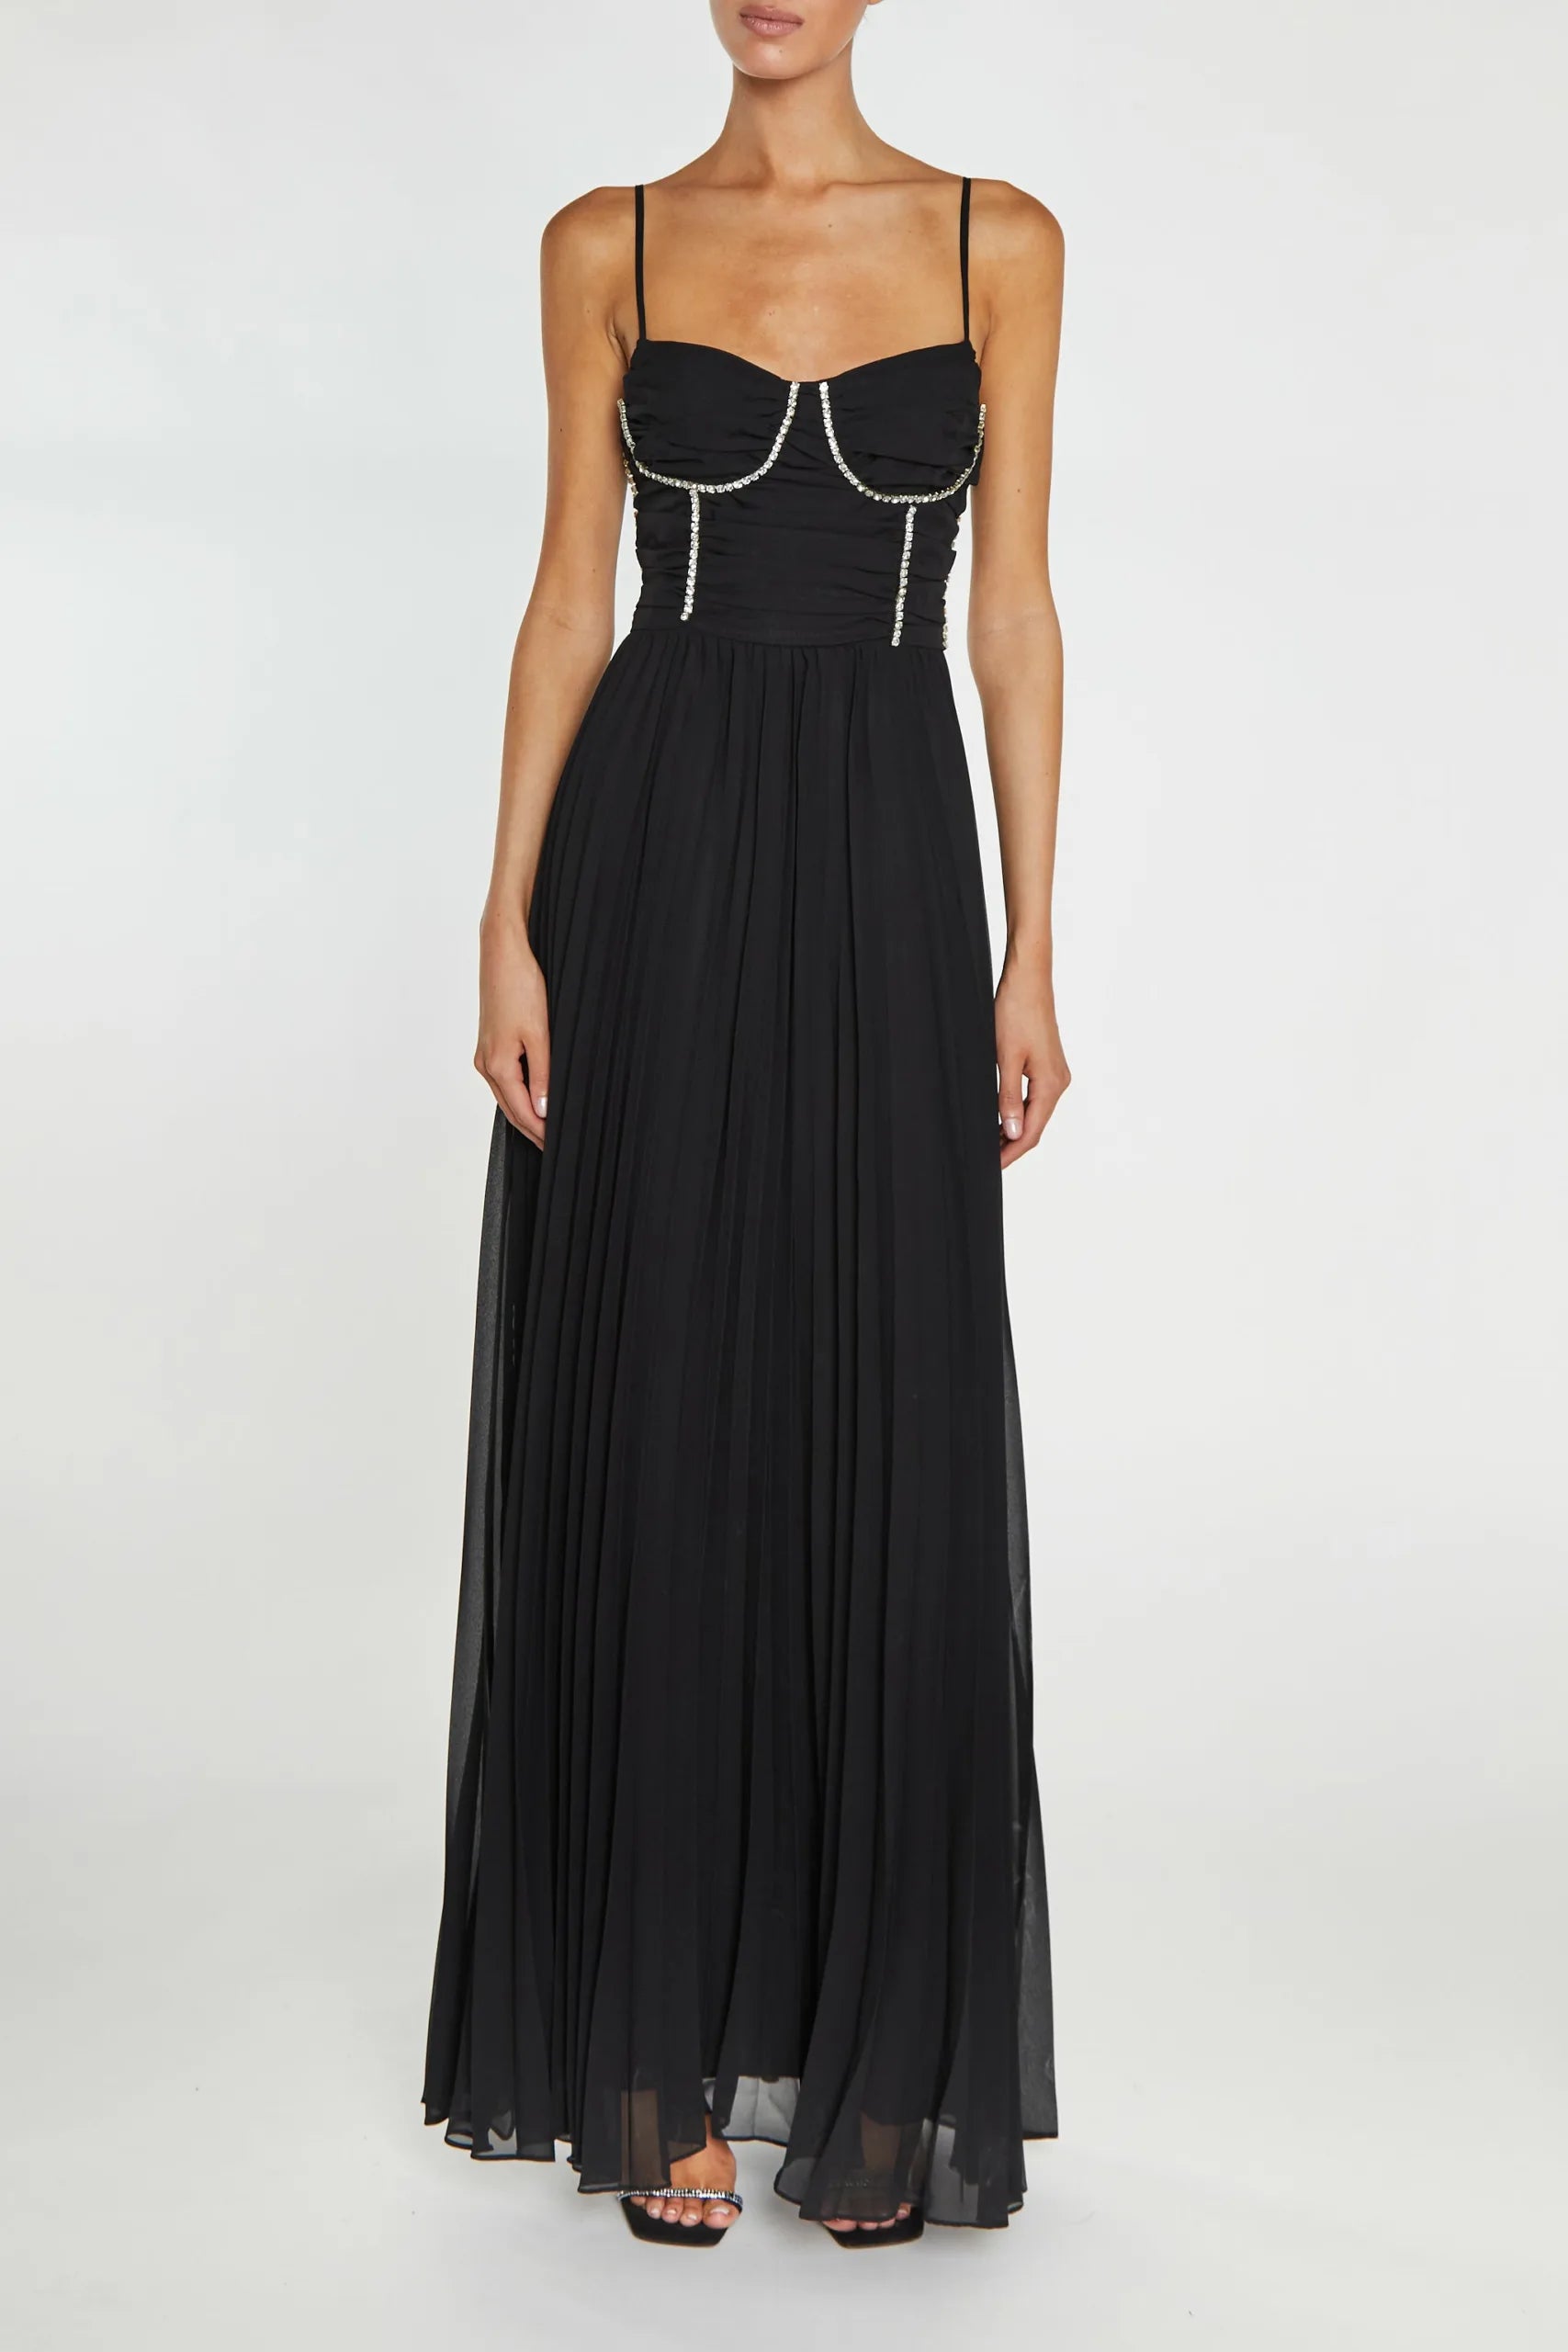 True Decadence Elaina Black Diamante Trimmed Bust Maxi Dress